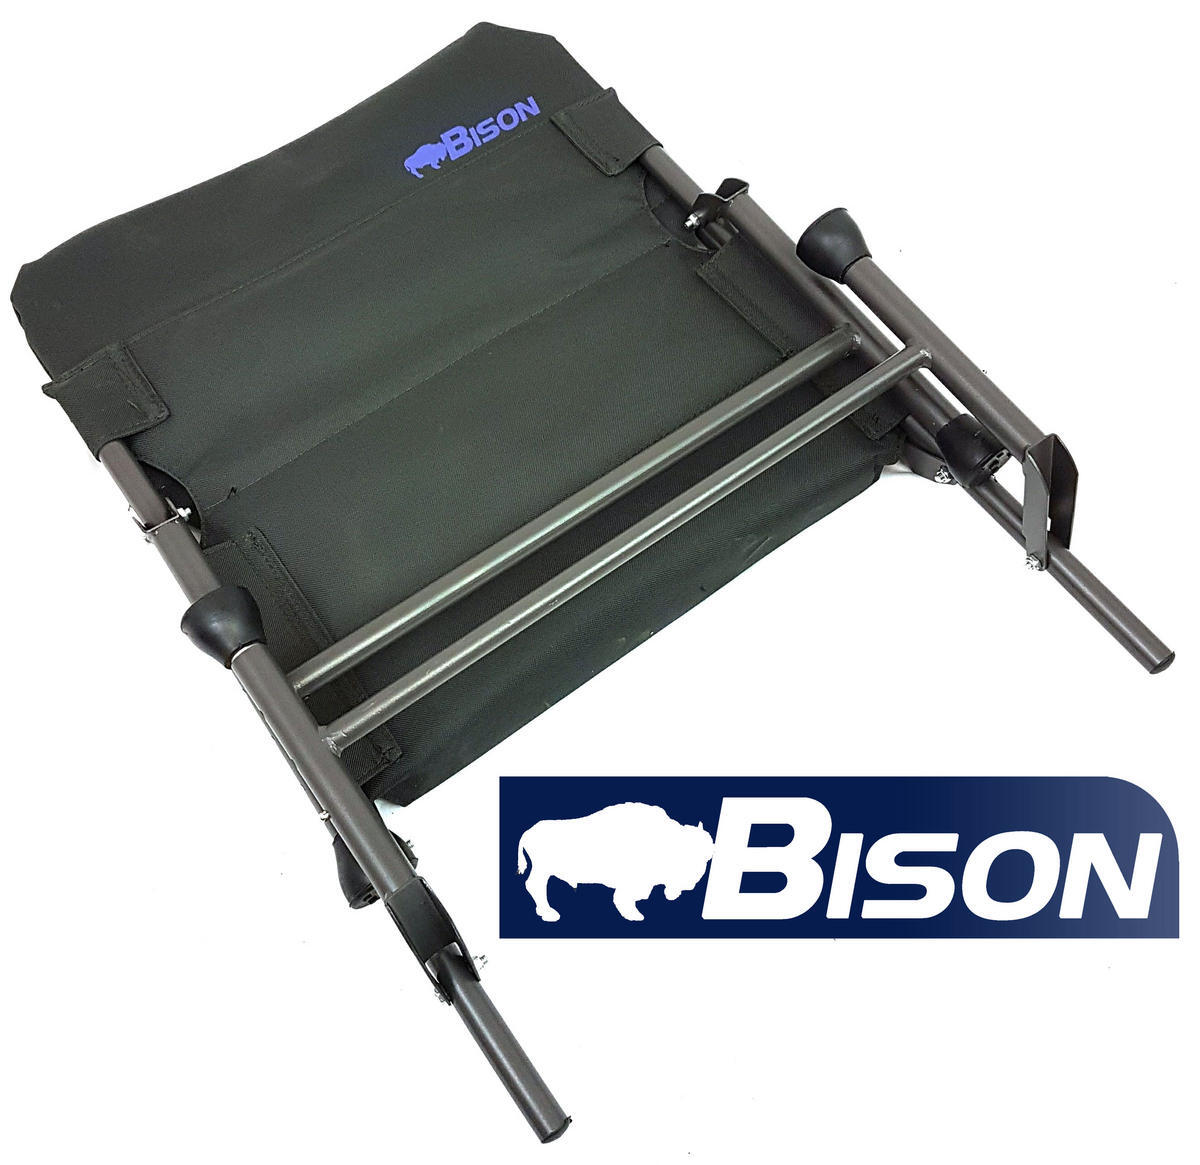 Bison Lightweight Adjustable Carp Chair BISON